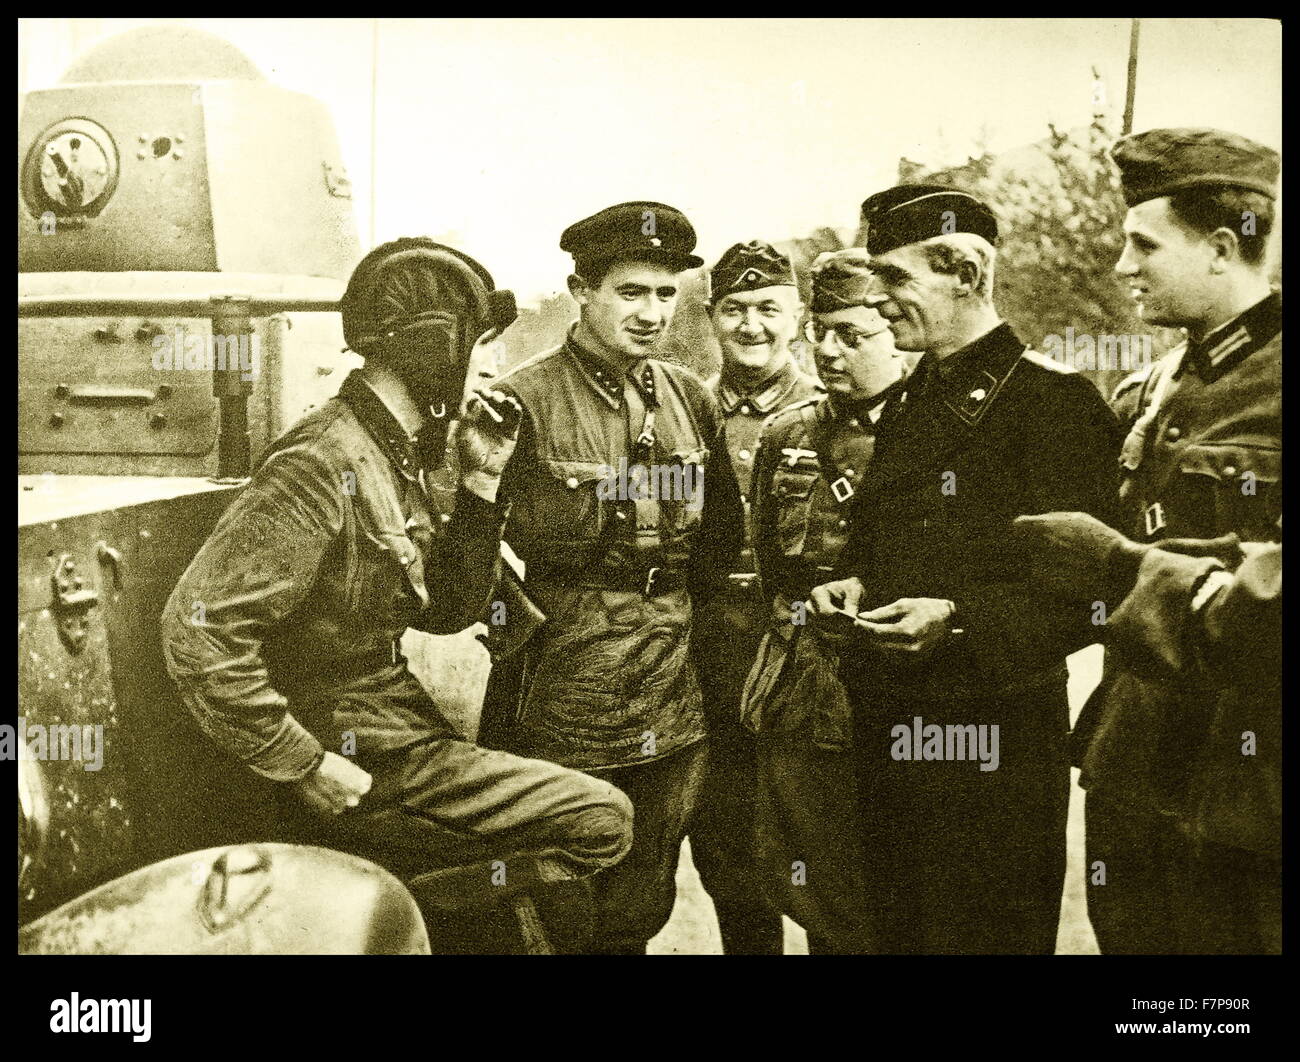 Molti soldati tedeschi sono riuniti intorno ad un serbatoio, socializzare e fumatori. I soldati sono di stanza presso il tedesco confine russo c1939 Foto Stock